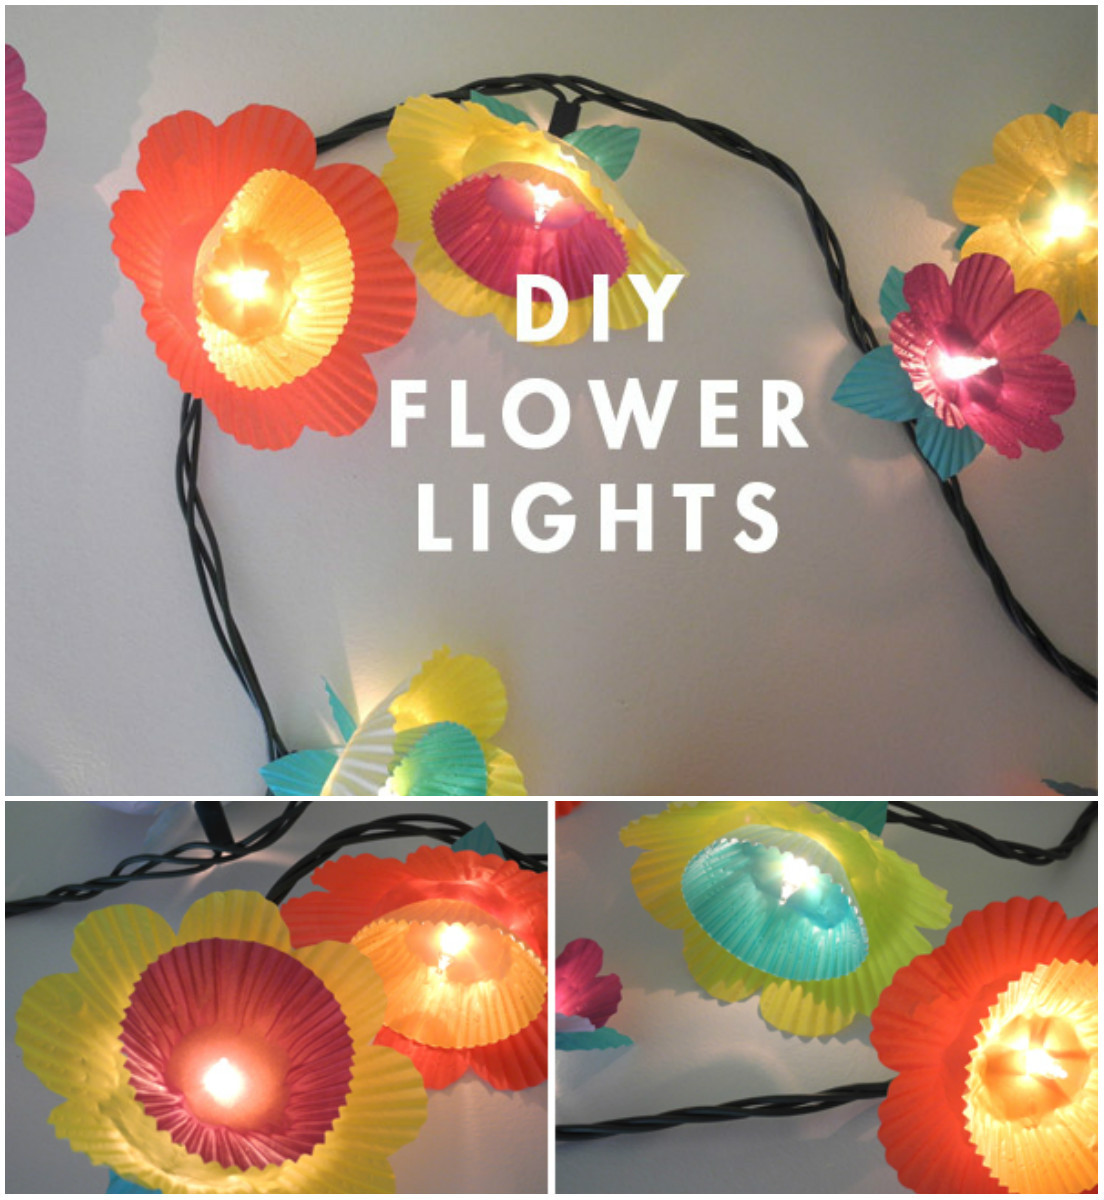 luces con forma de flores para decorar